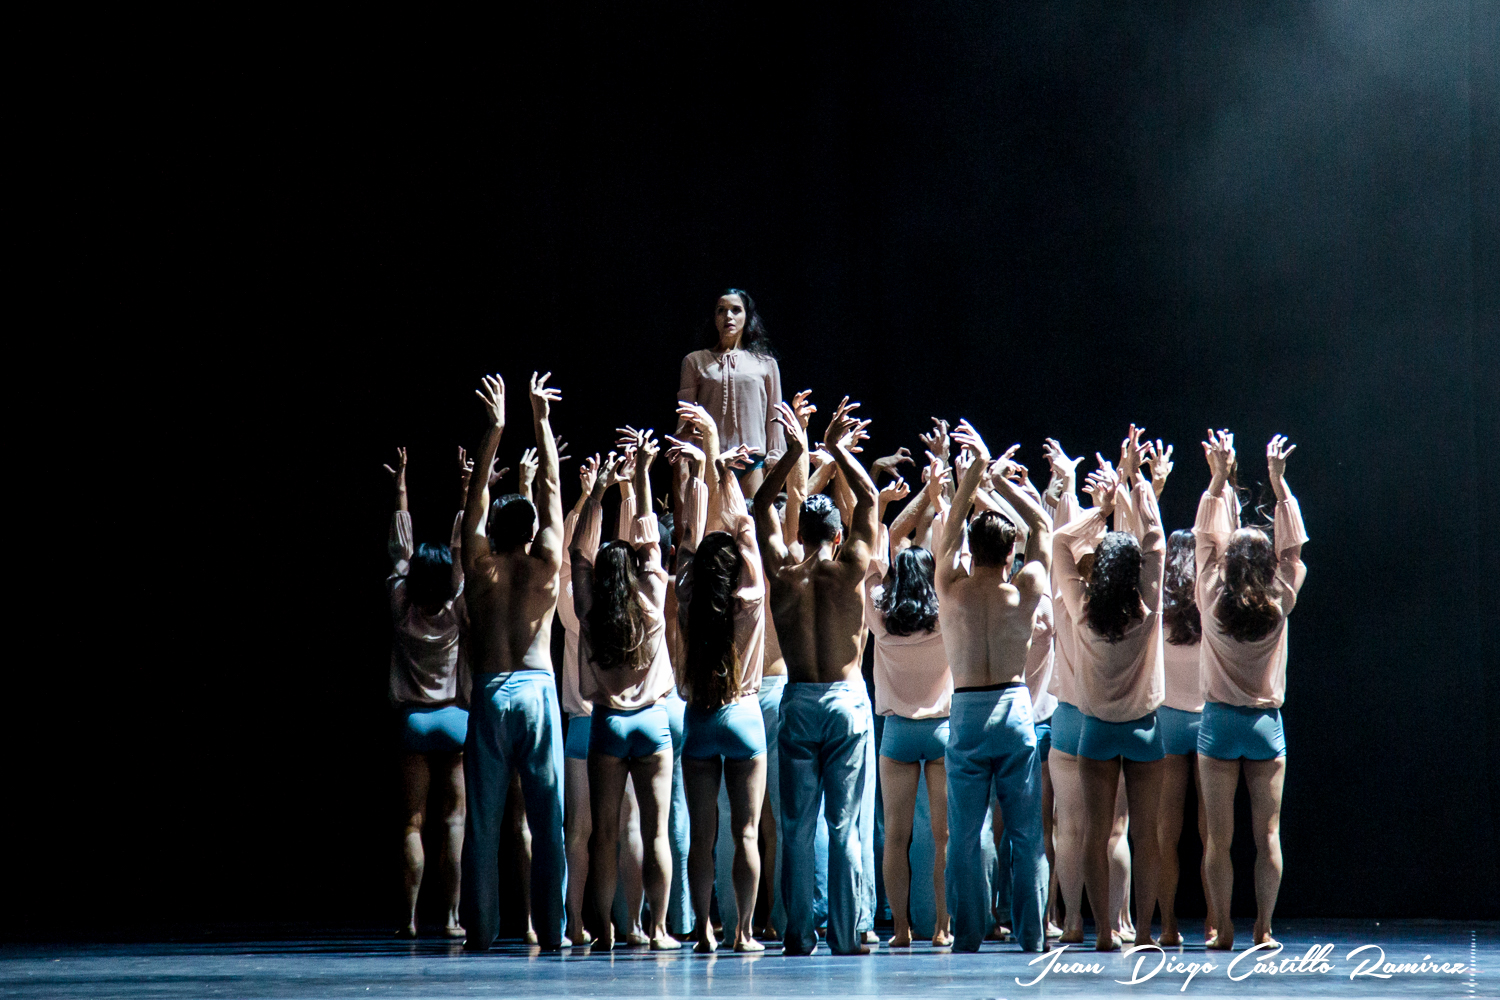   Tanz und Jubel | Eindrücke vom Bogotá-Gastspiel des Leipziger Balletts  